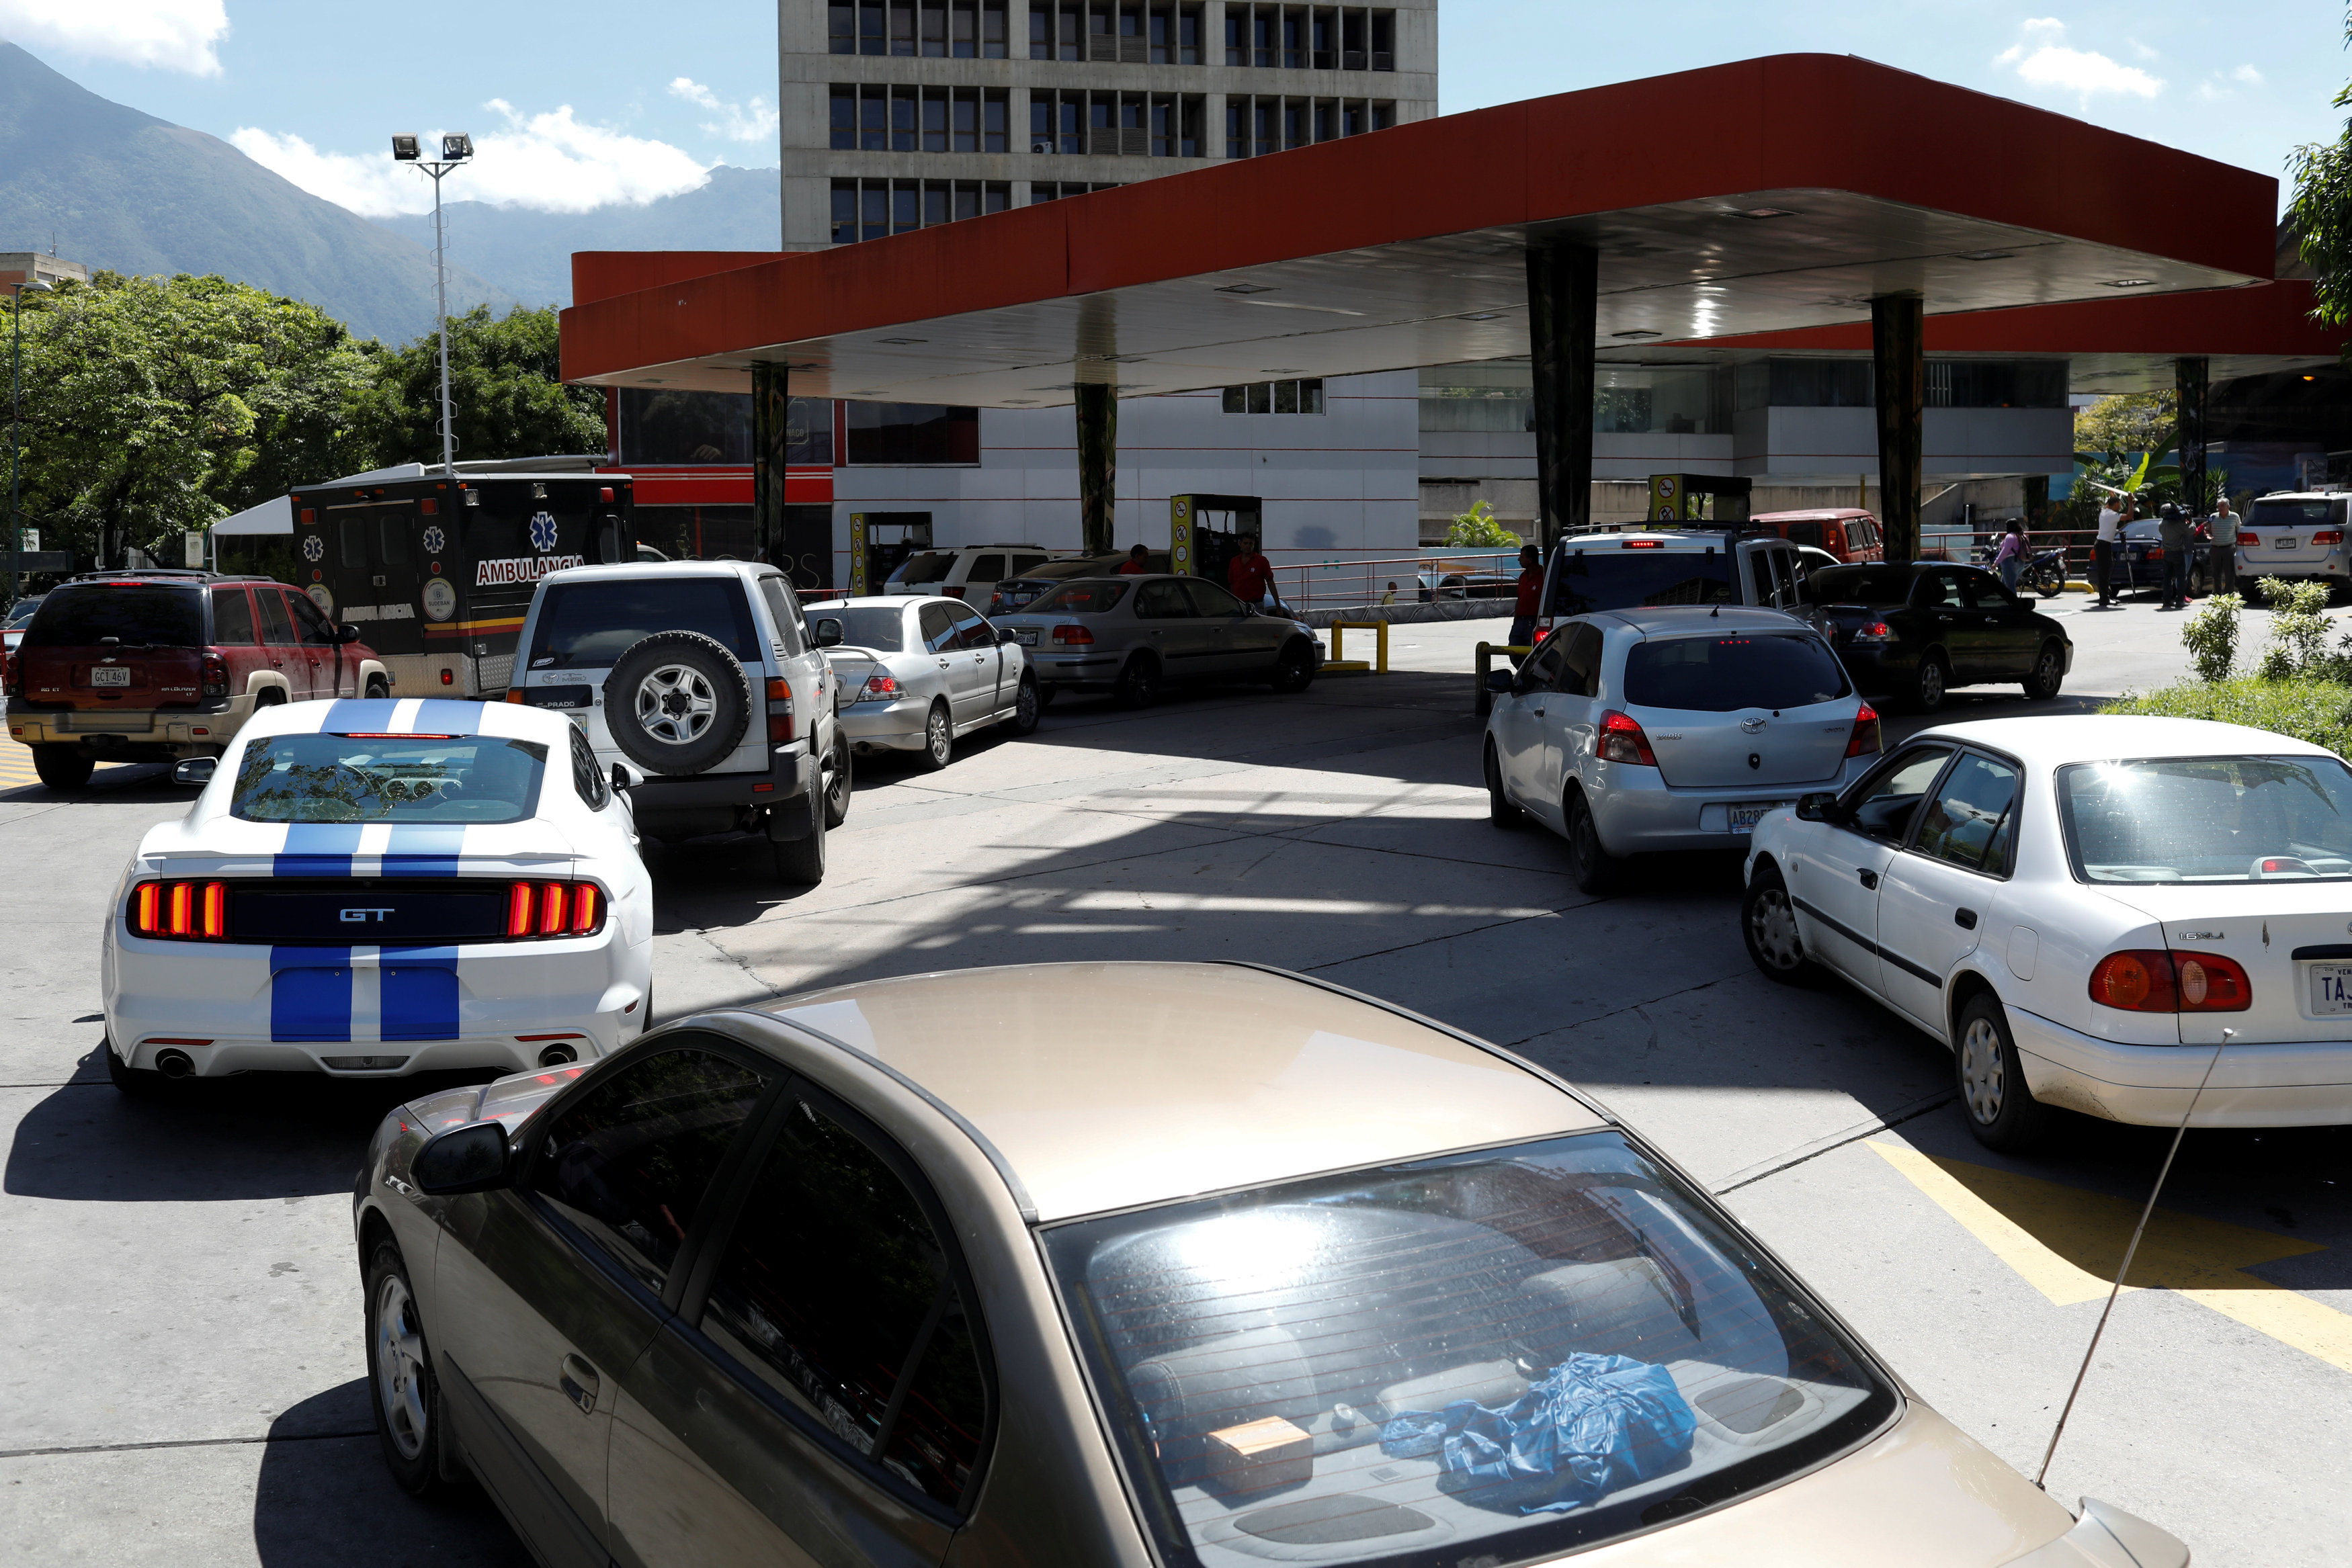 Persisten las colas ante incertidumbre de precio de la gasolina (Fotos)